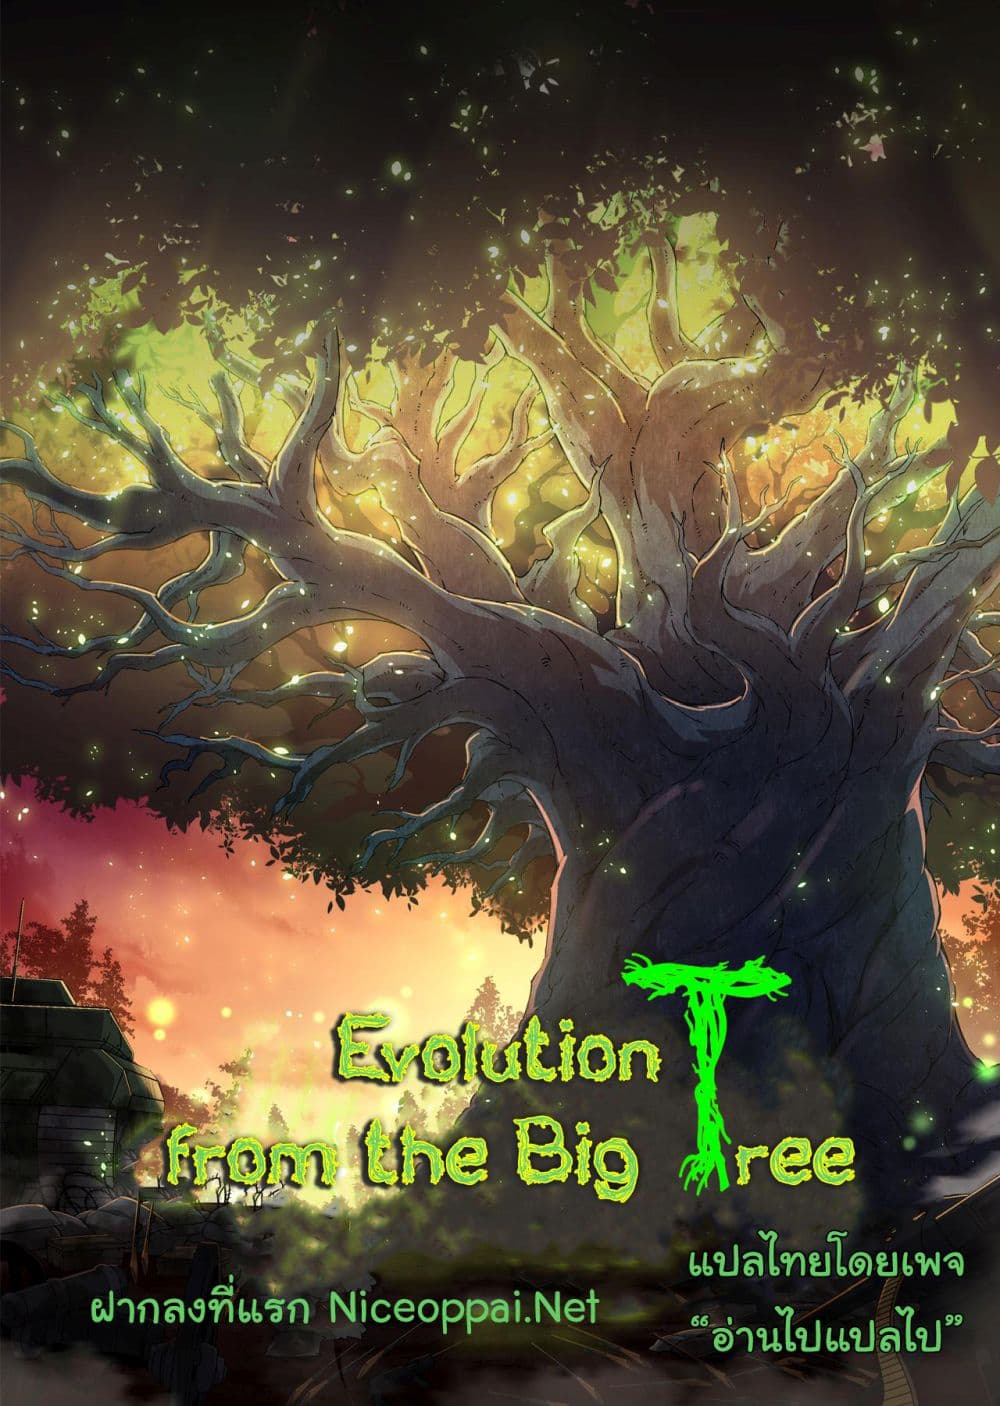 Evolution from the Big Tree Ã Â¸â€¢Ã Â¸Â­Ã Â¸â„¢Ã Â¸â€”Ã Â¸ÂµÃ Â¹Ë† 33 (1)